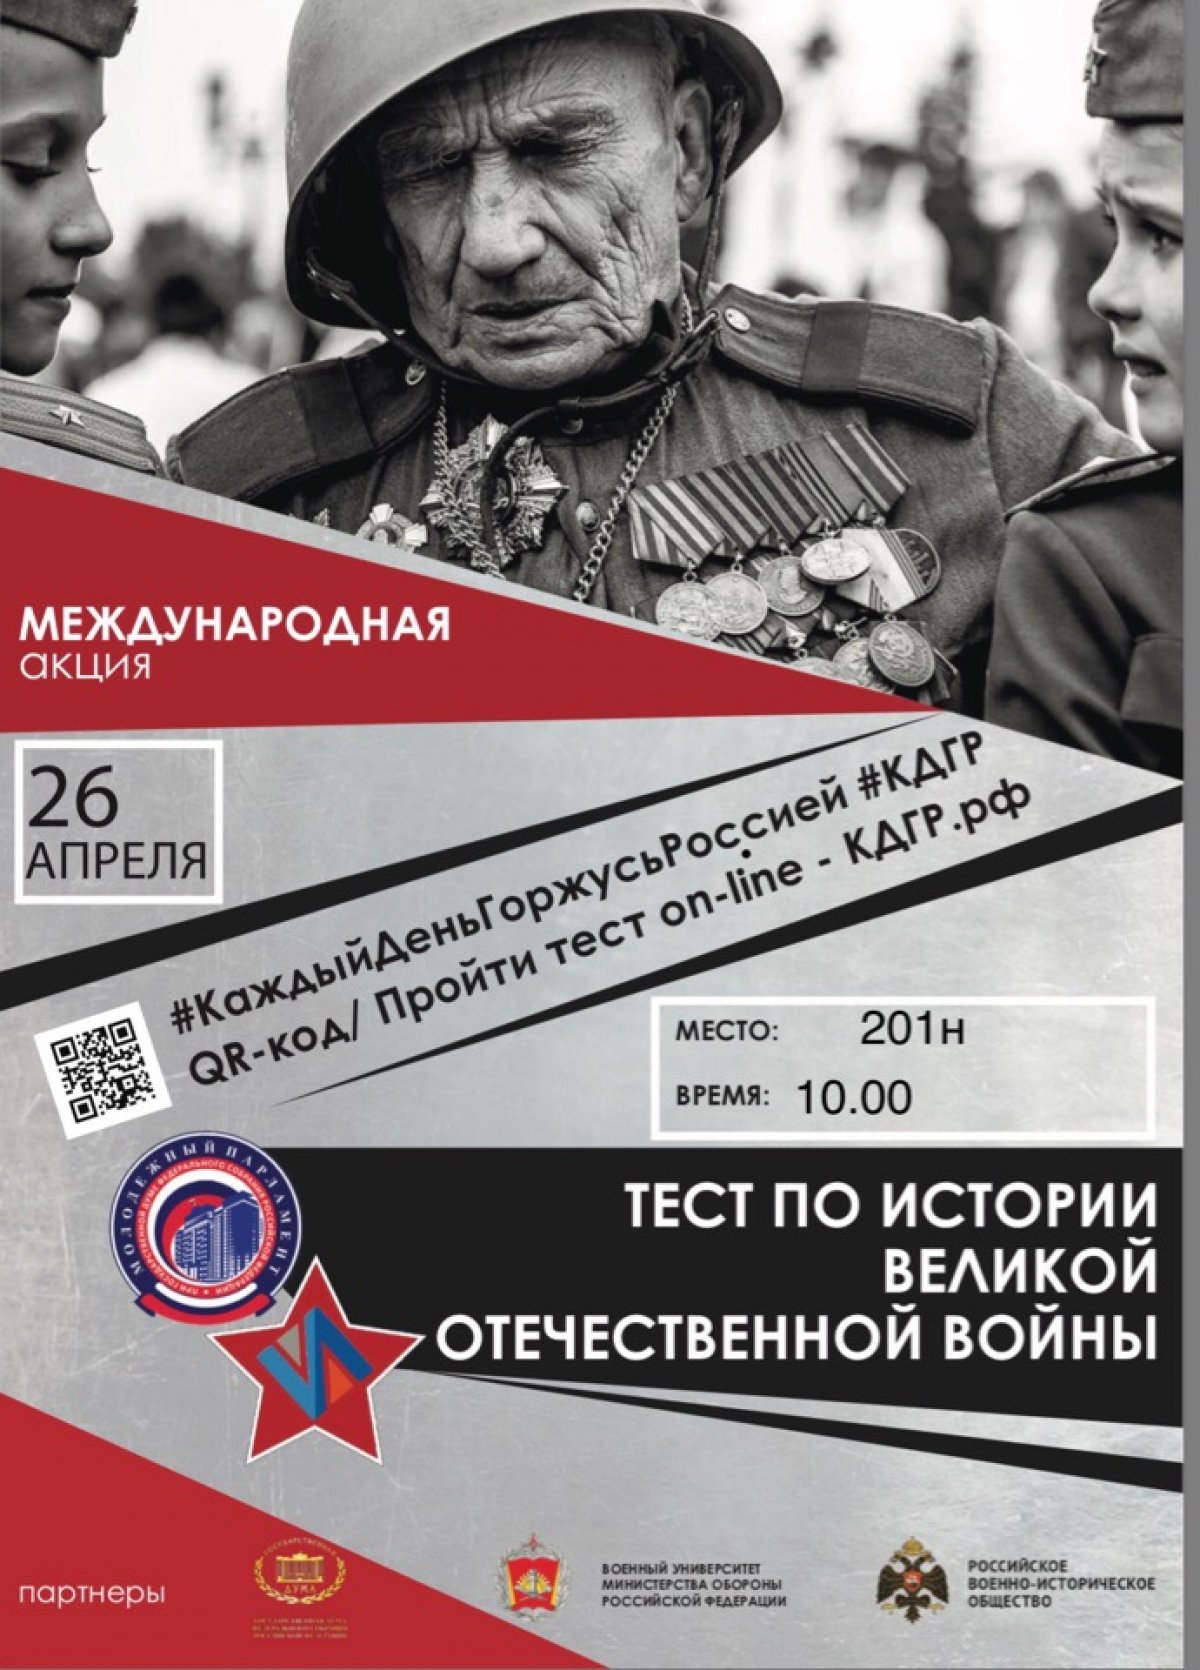 Знать историю Великой Отечественной войны, значит отдавать дань памяти победителям!